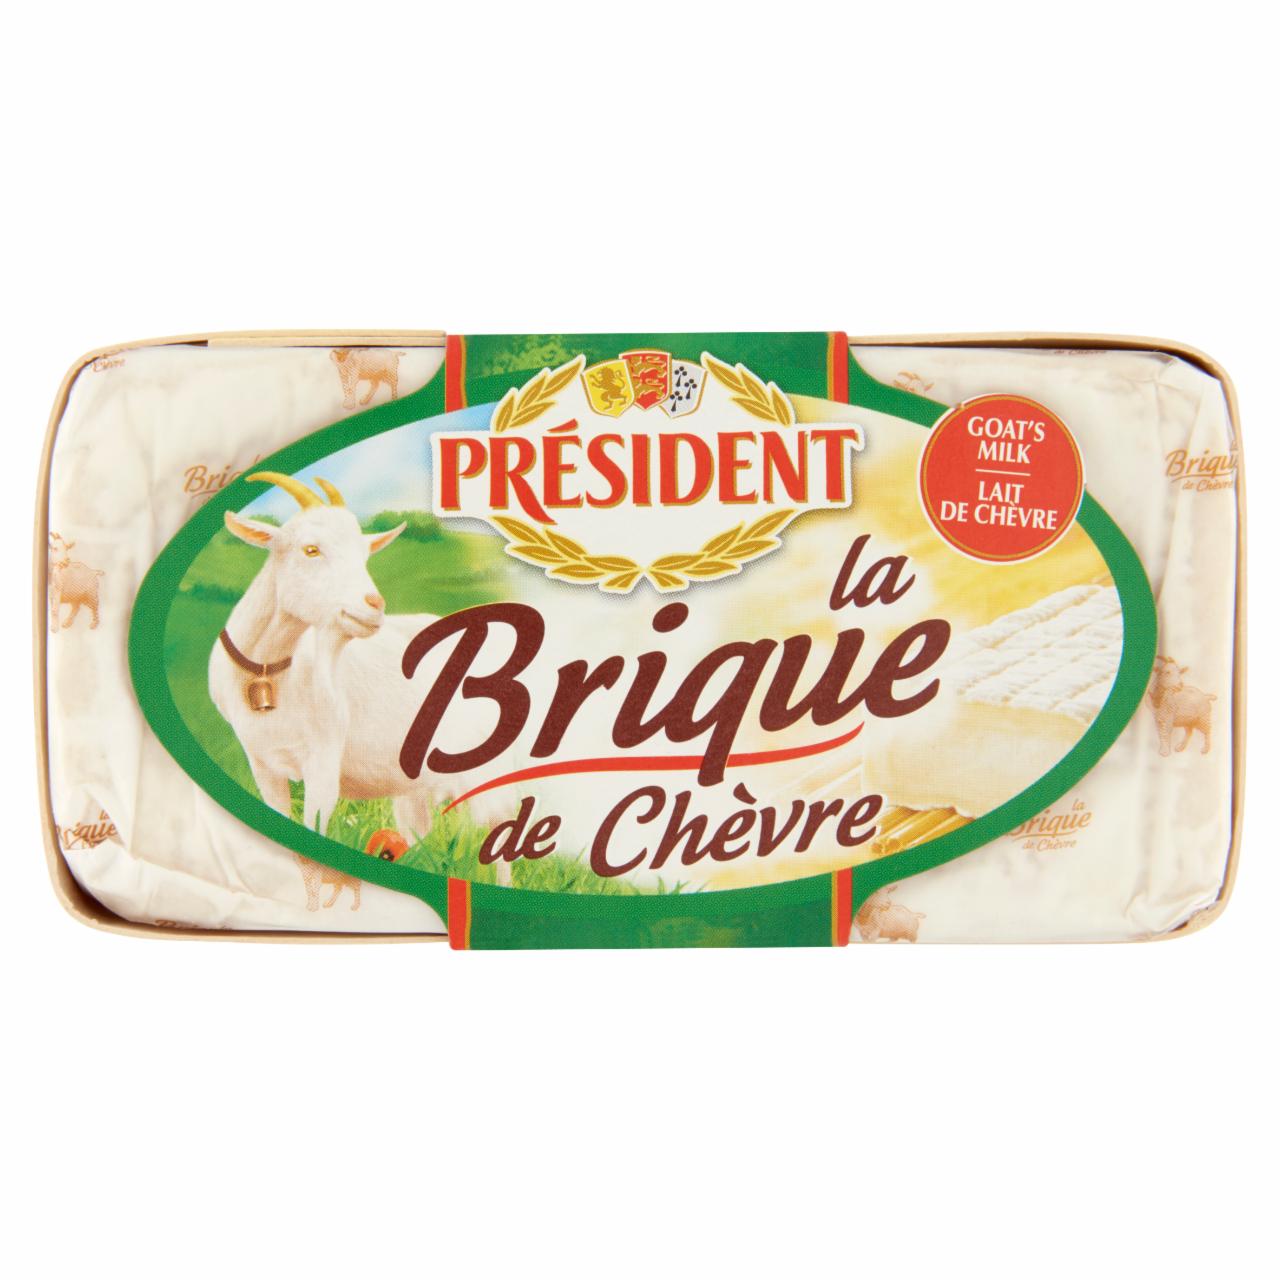 Képek - Président Brique de Chavre zsíros, lágy kecskesajt 150 g